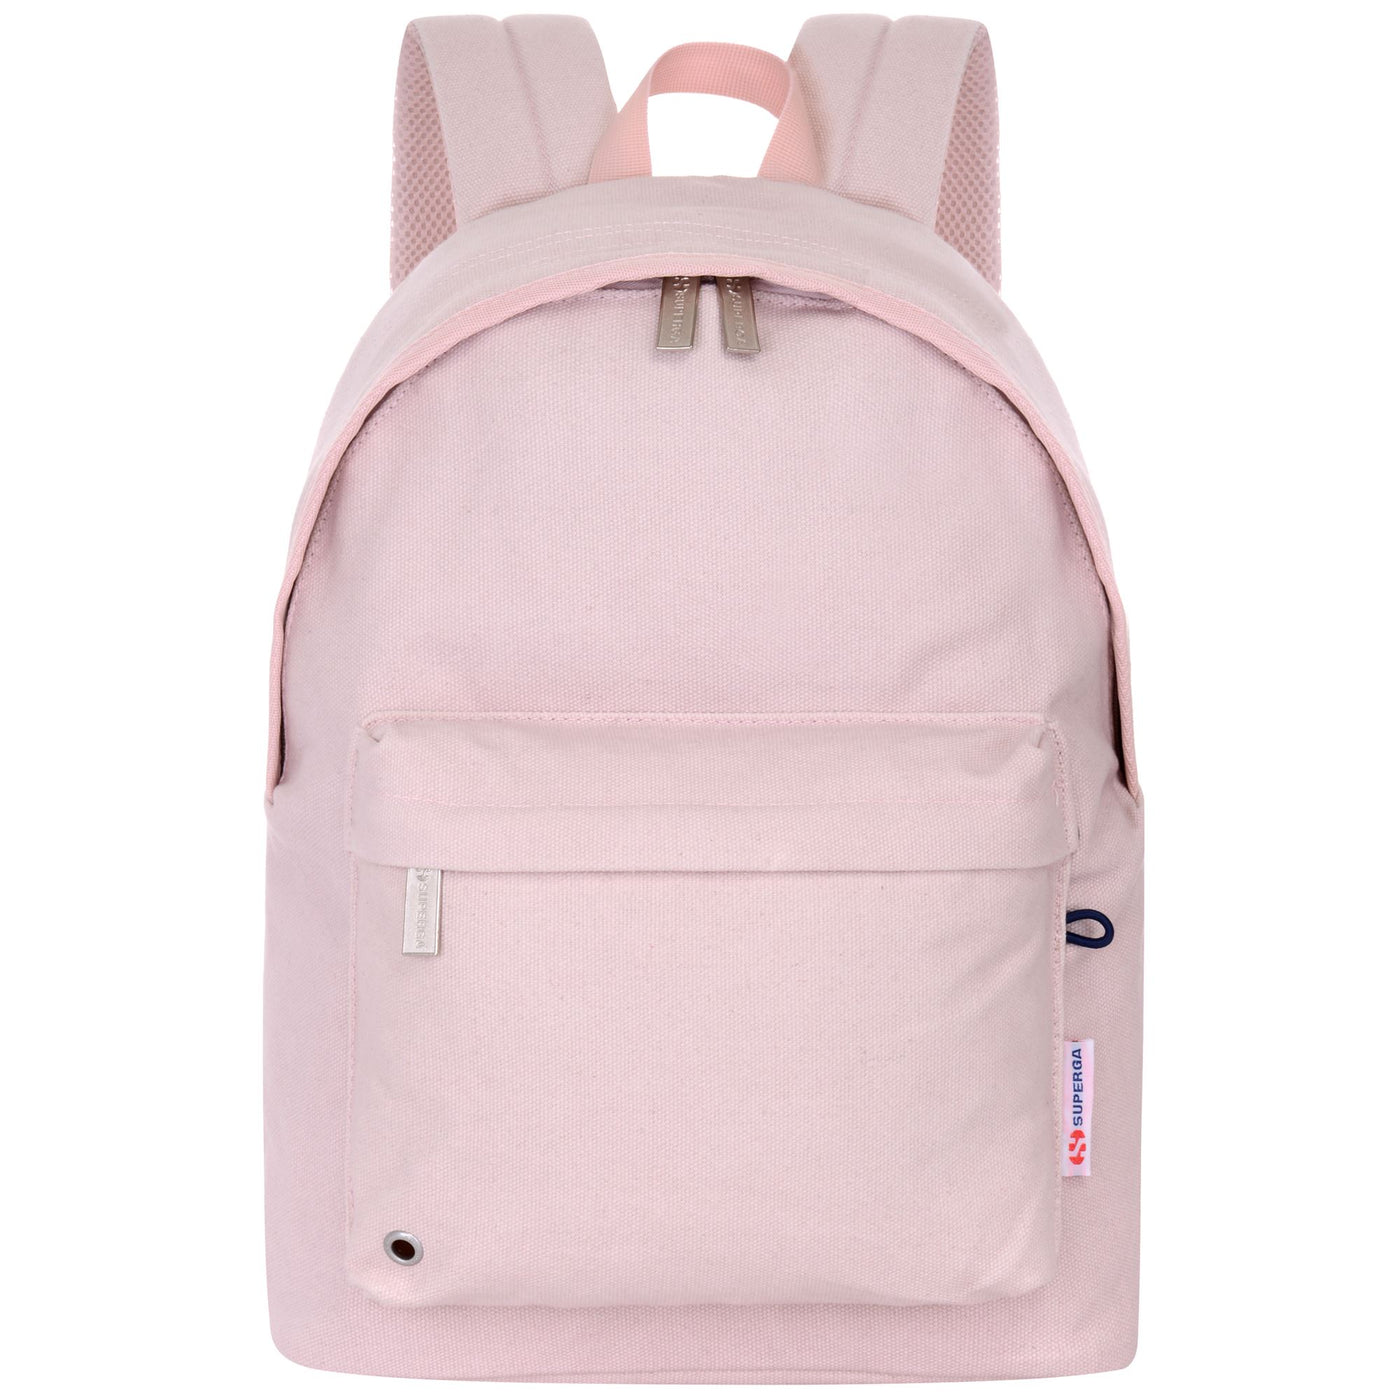 Bags Unisex 2750 BACKPACK Backpack PINK SKIN | superga Photo (jpg Rgb)			